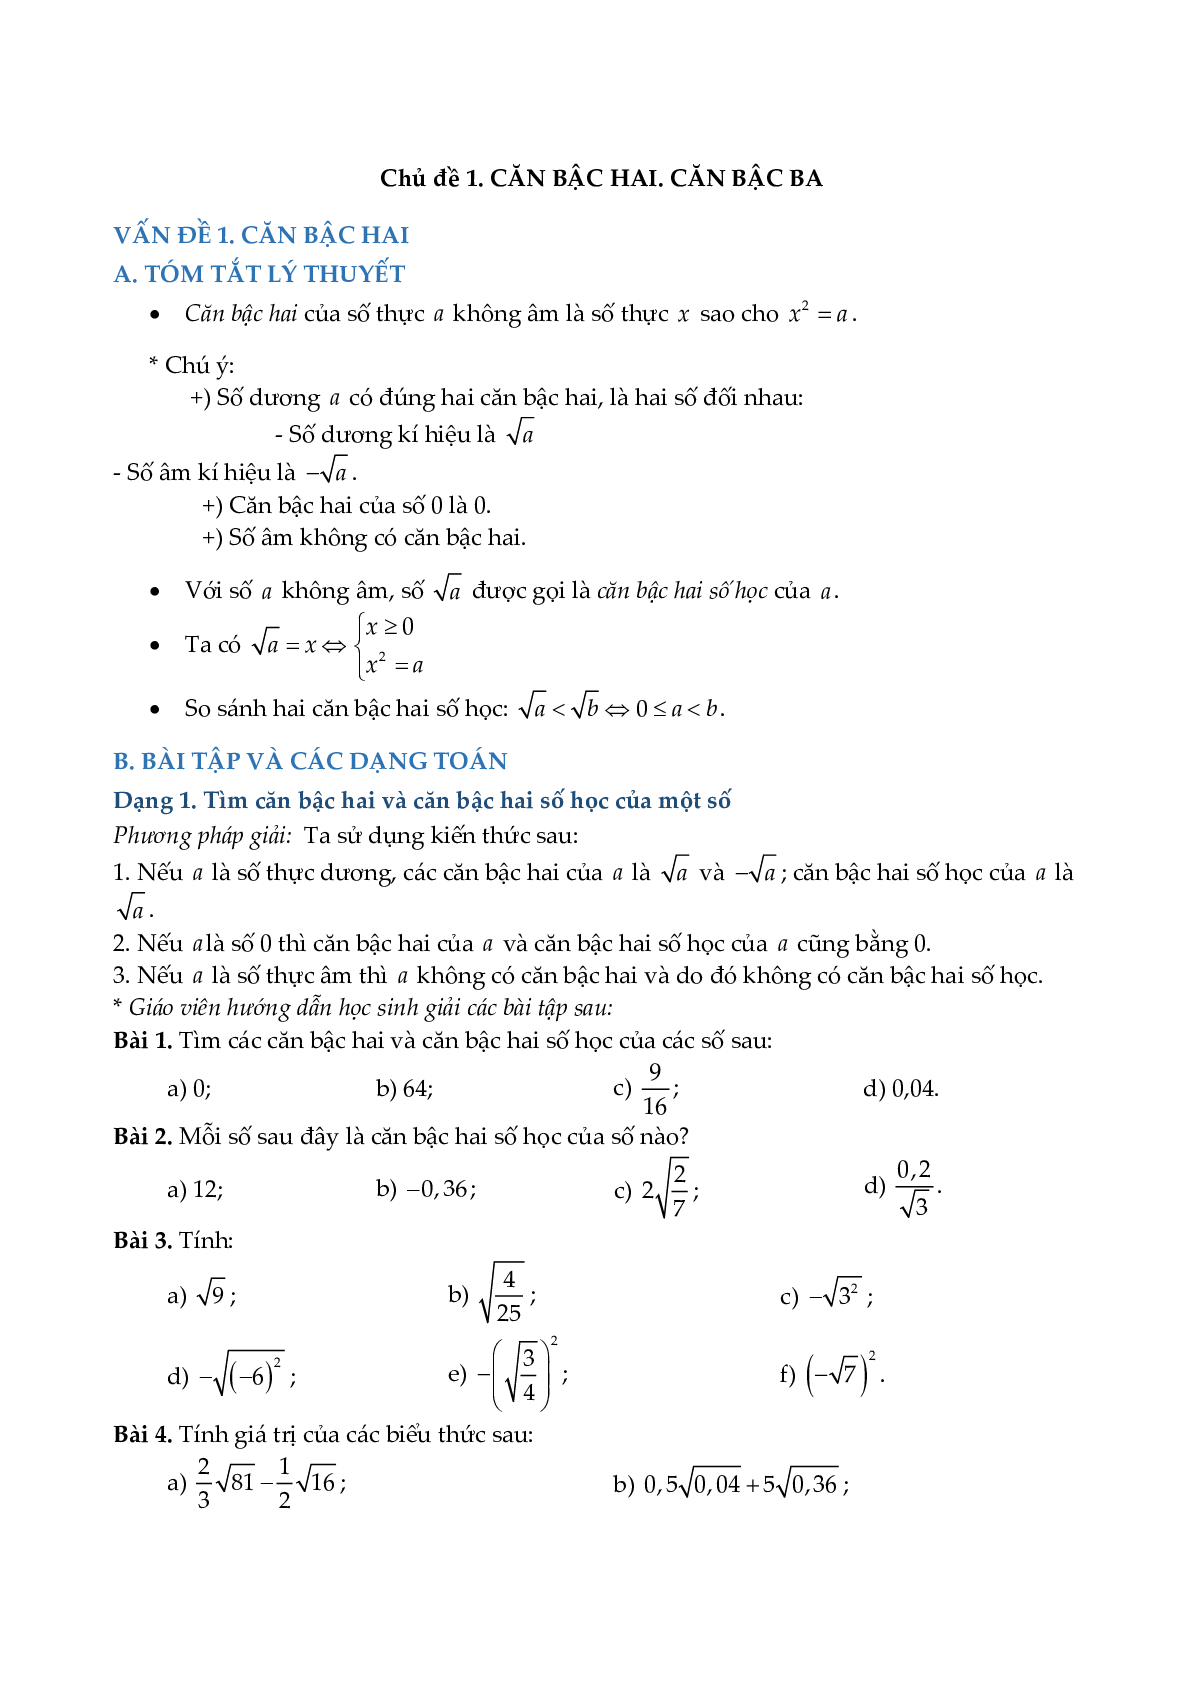 Chuyên đề rút gọn biểu thức và bài toán liên quan (trang 3)